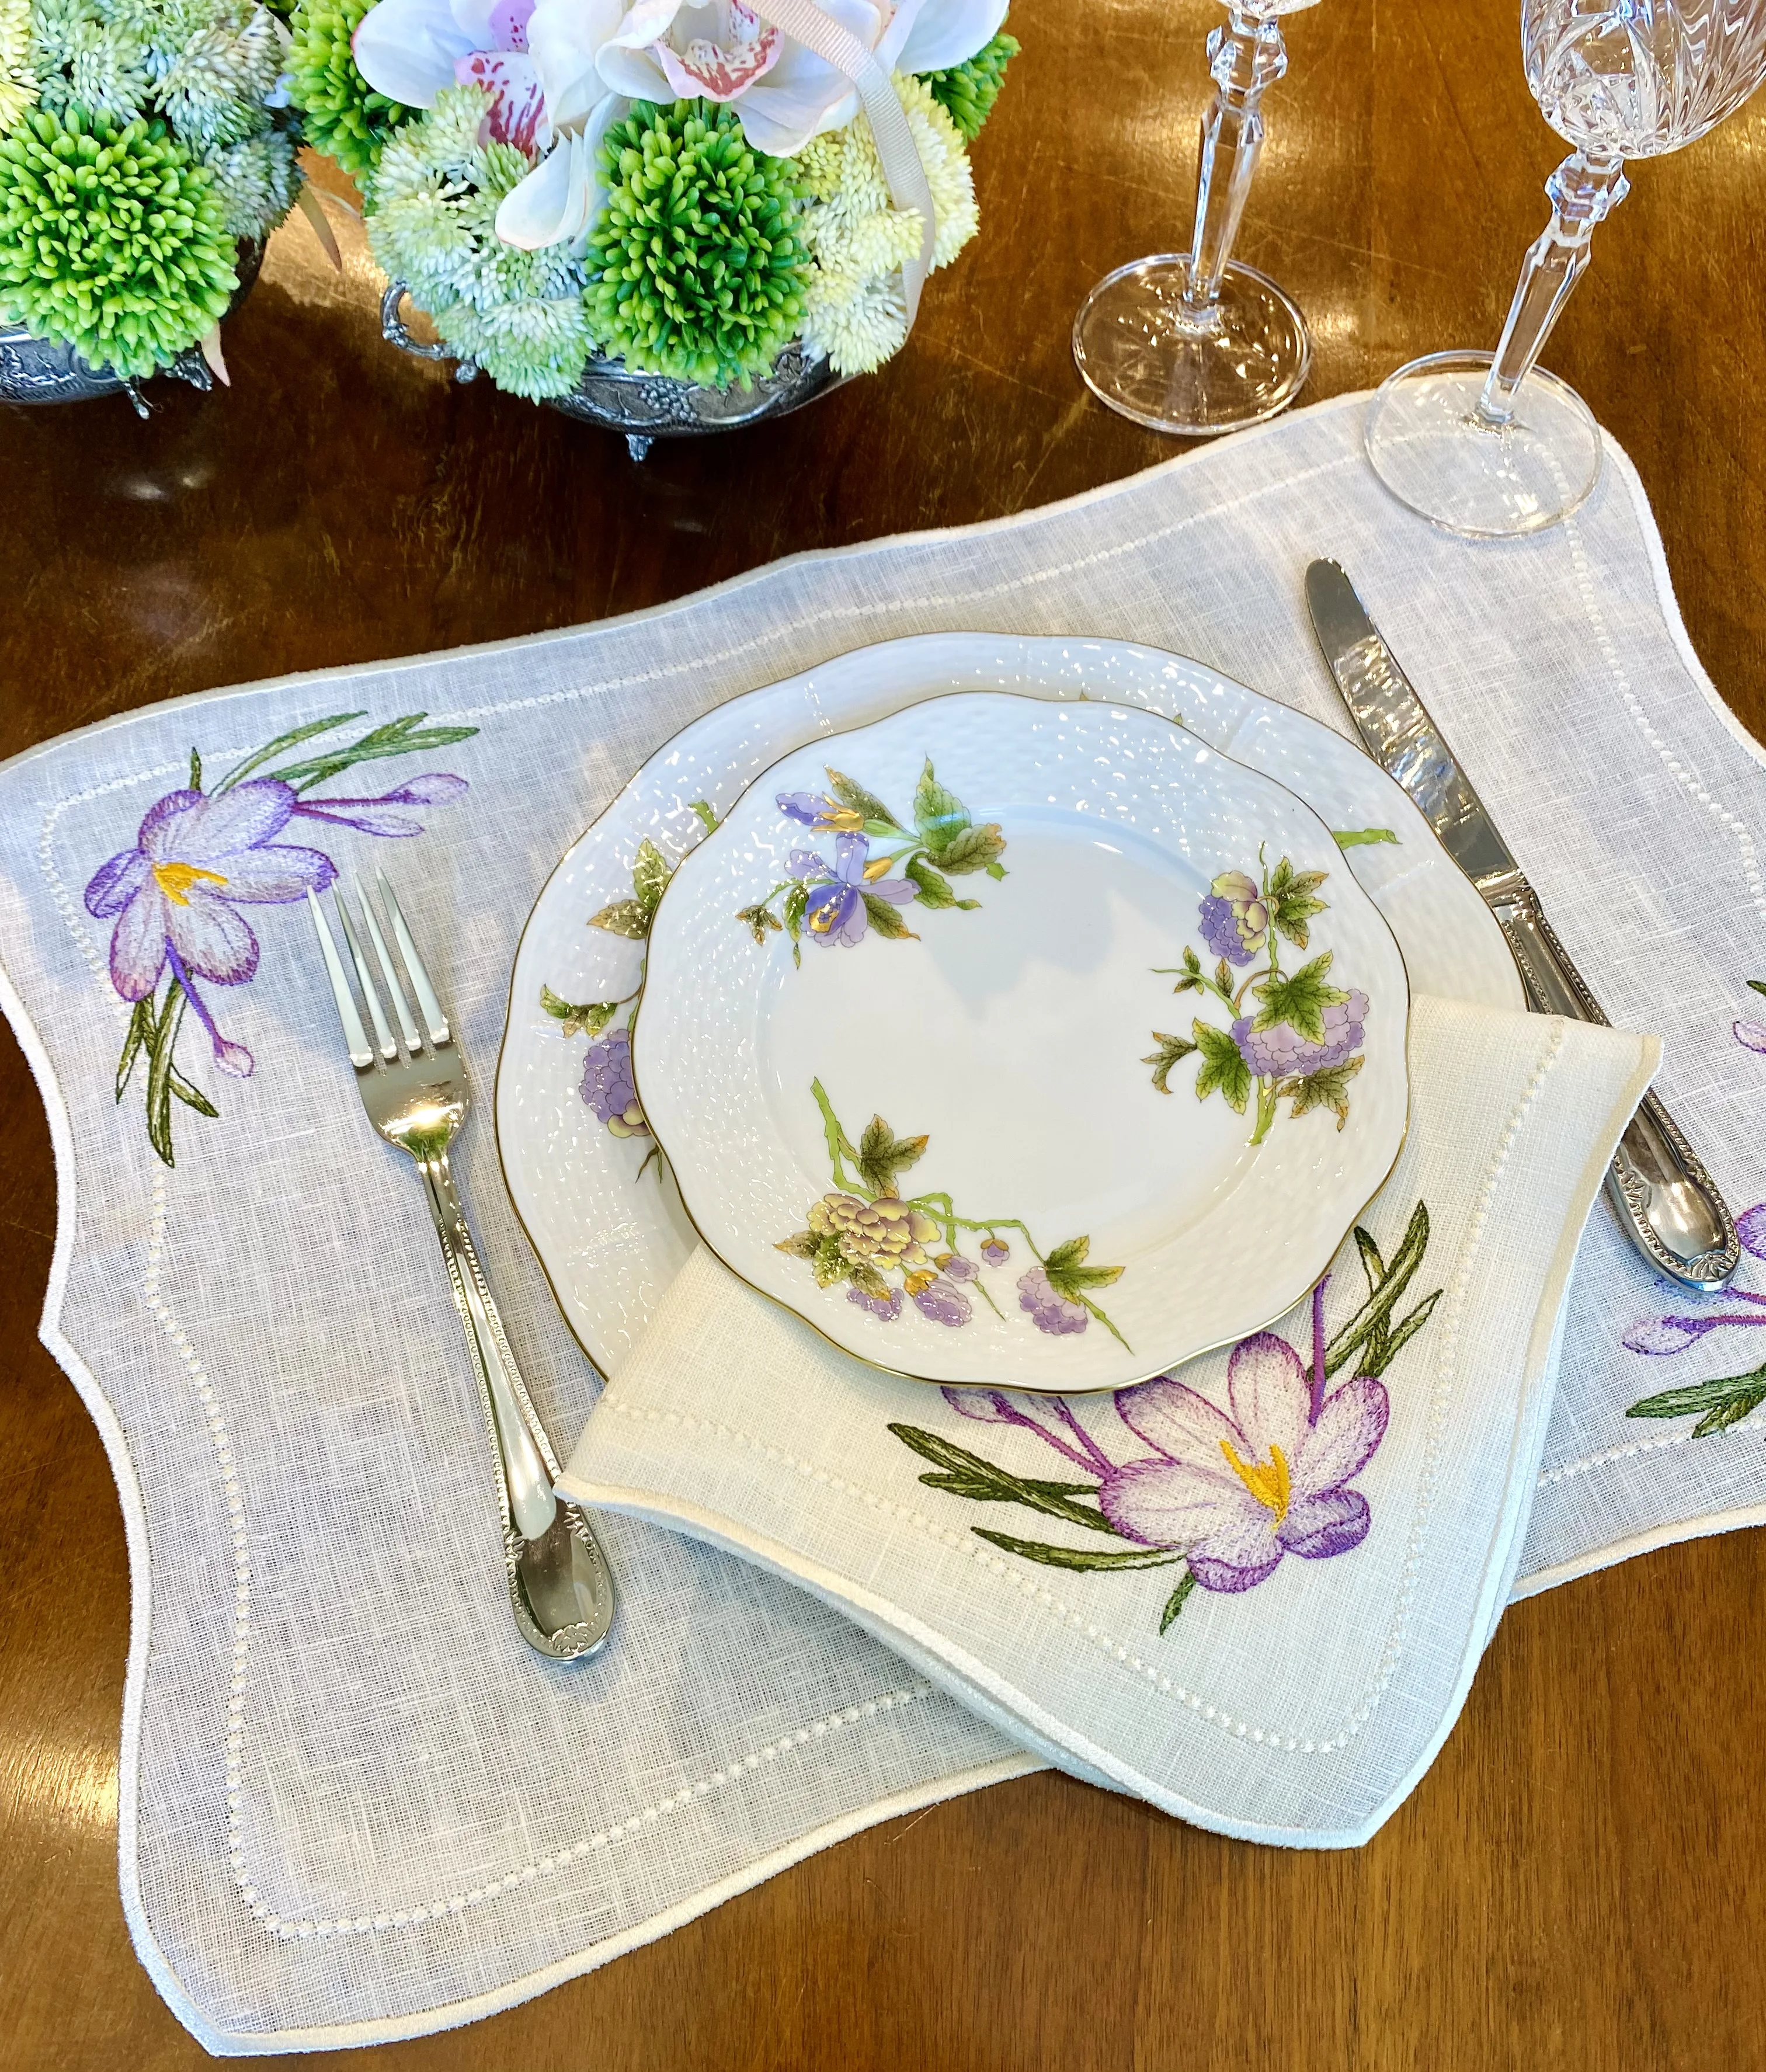 

Home Decoration Serving Napkin 6 or 12Pcs Napkins Linen Fabric for Table Dinner Napkins Presentation Flower Design